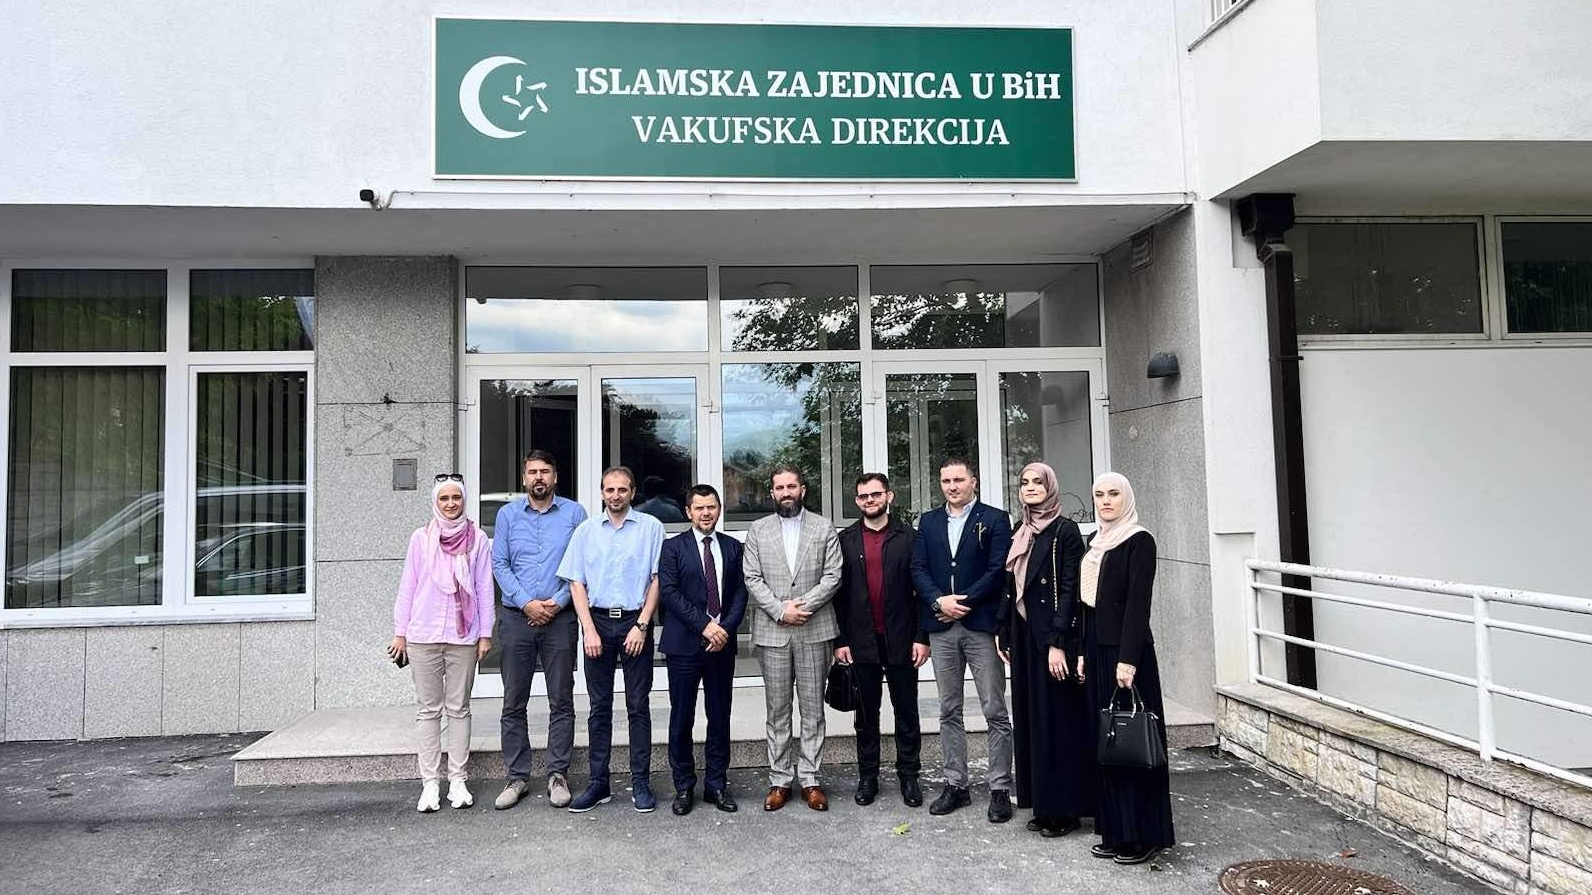 Delegacija Vakufske direkcije IZ u Republici Srbiji u posjeti Vakufskoj direkciji IZ u BiH